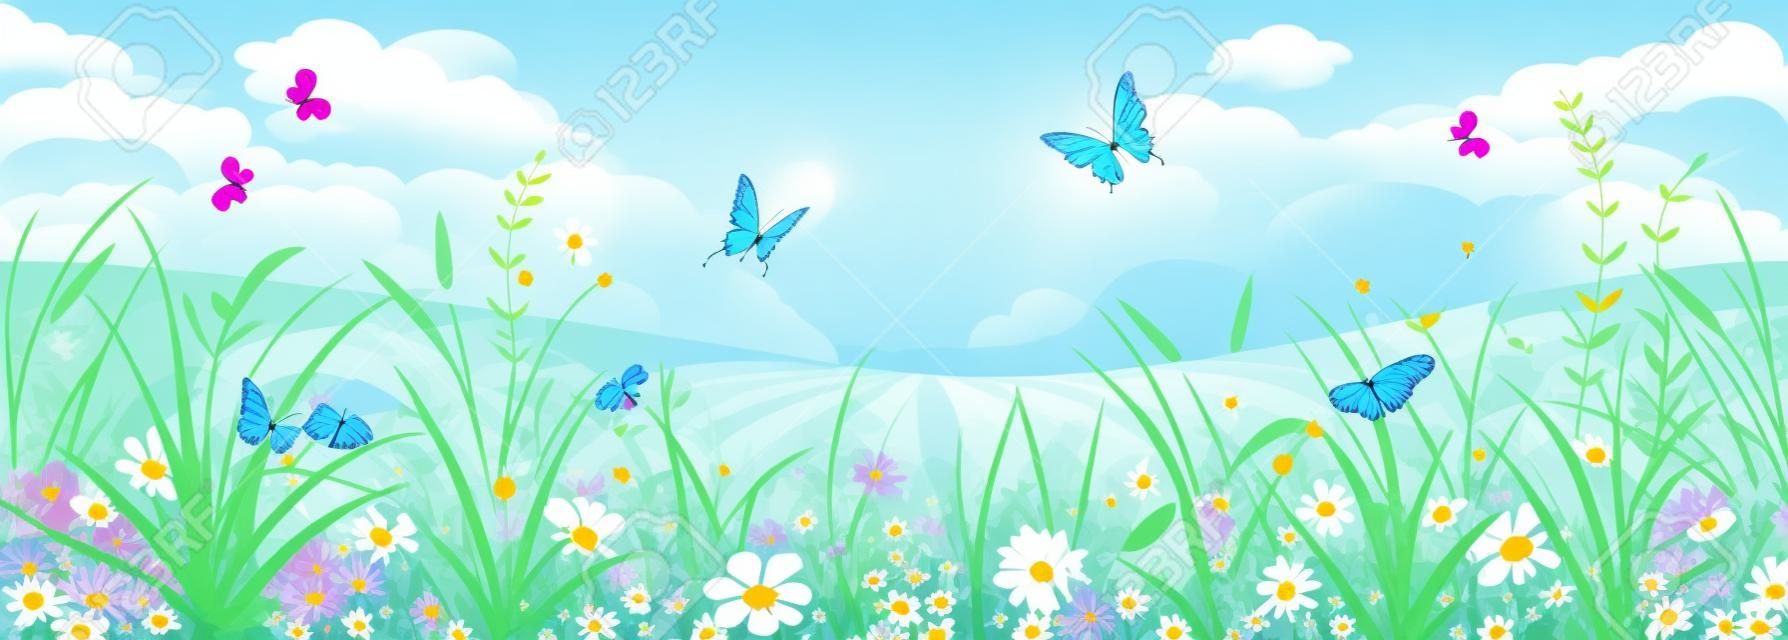 꽃 여름이나 봄 풍경, 꽃, 푸른 하늘과 나비와 초원